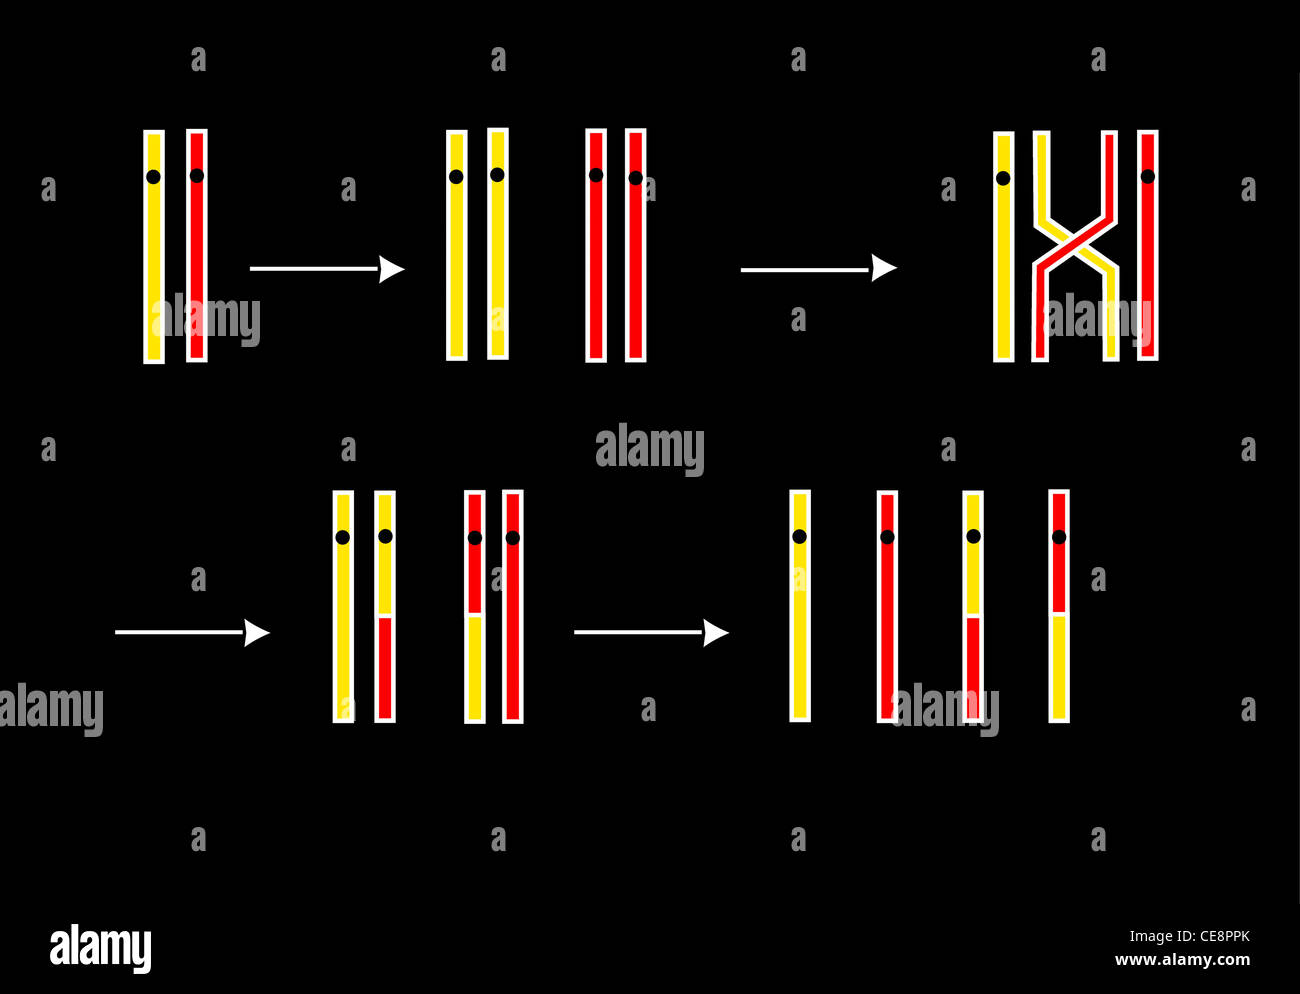 Kunstwerk zwei Chromosomen tauschen genetisches Material vor der Meiose Produktion Gameten natürliche genetischen Prozess überqueren Stockfoto